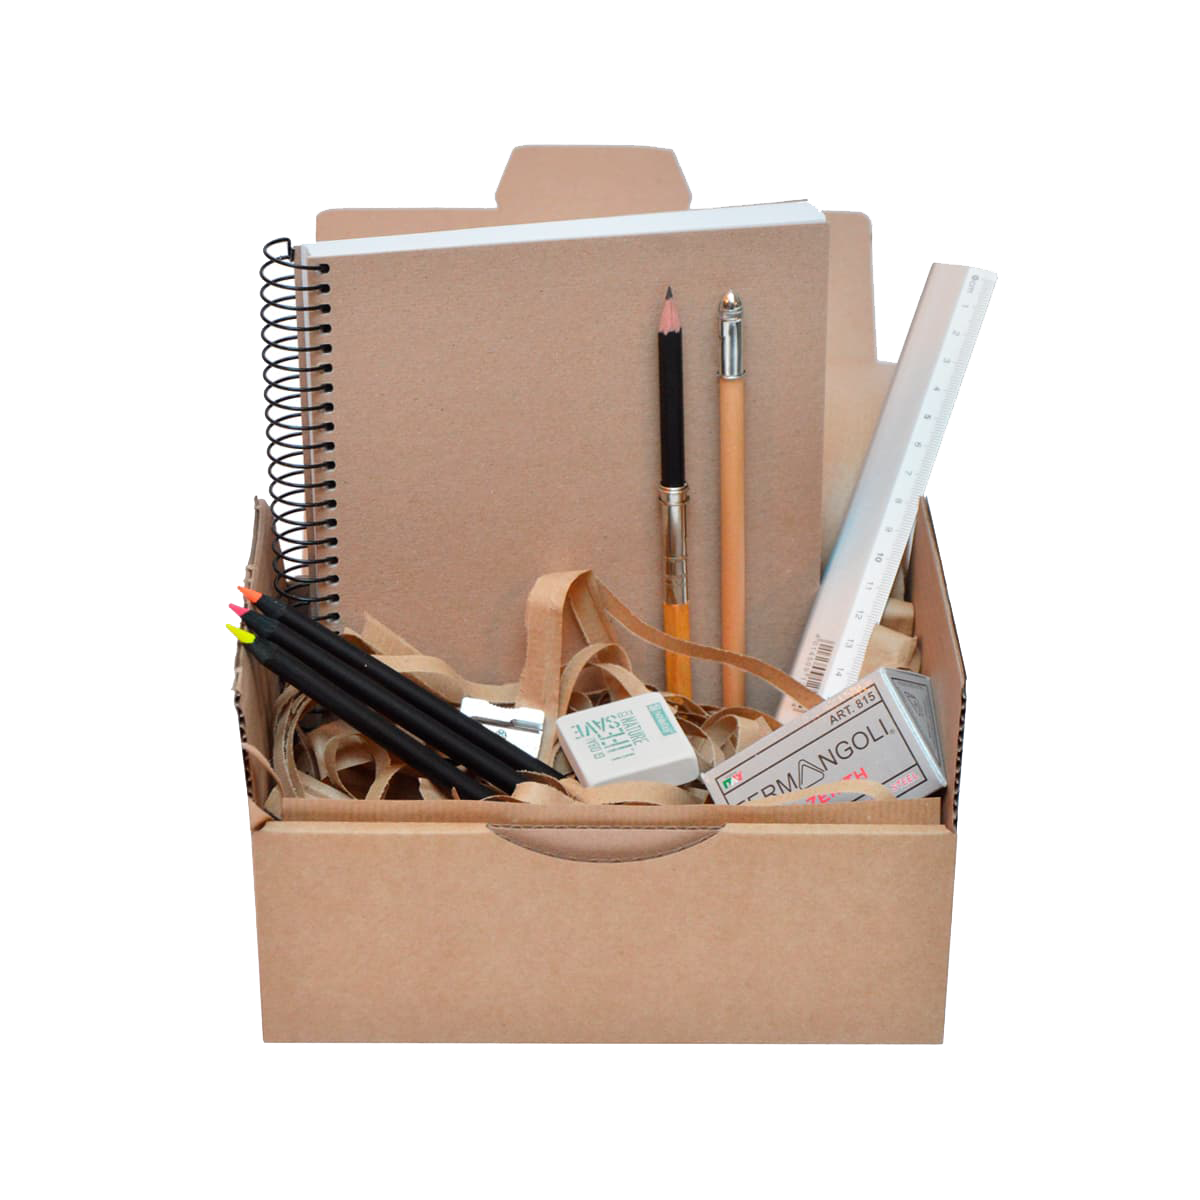 Pack Material Oficina - PS BASICS OFFICE (ESENCIAL) - Kit de material de  Oficina: Subrayadores, Bolígrafos, Corrector Tipp-ex, Cinta Adhesiva,  Clips